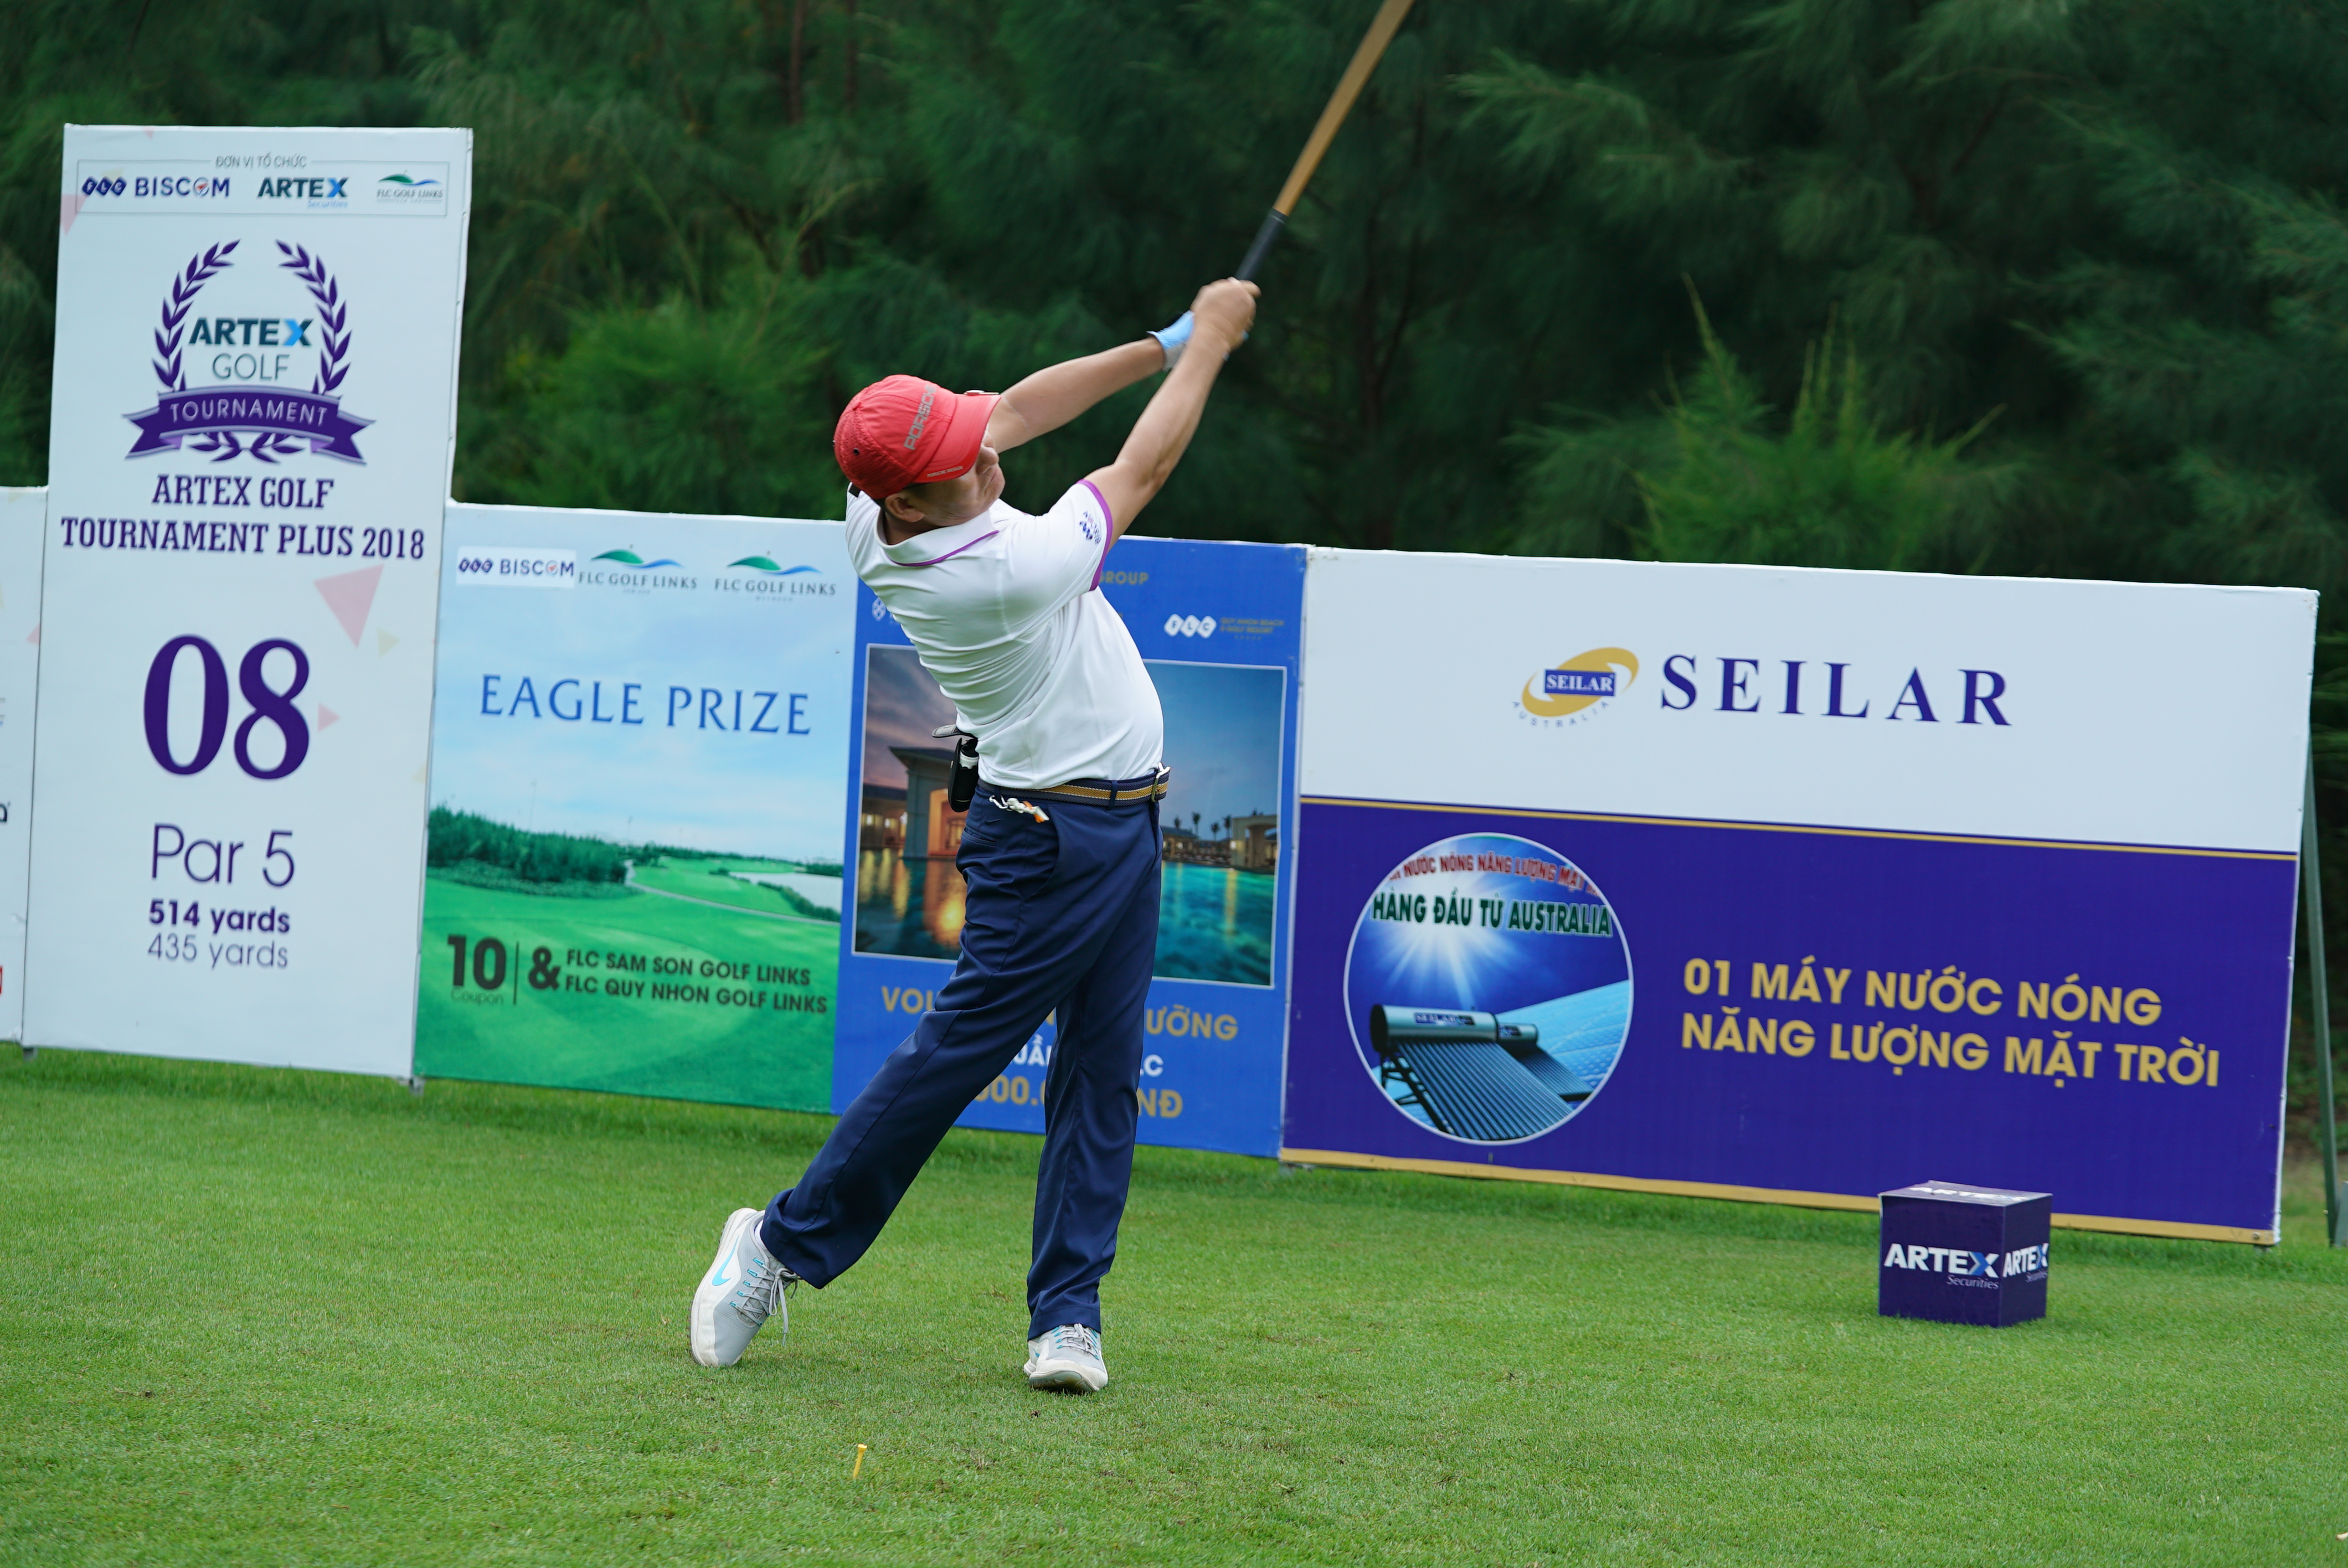 Giải Artex Golf Tournament Plus 2018 chính thức diễn ra với hơn 1000 golfer trong 5 ngày thi đấu